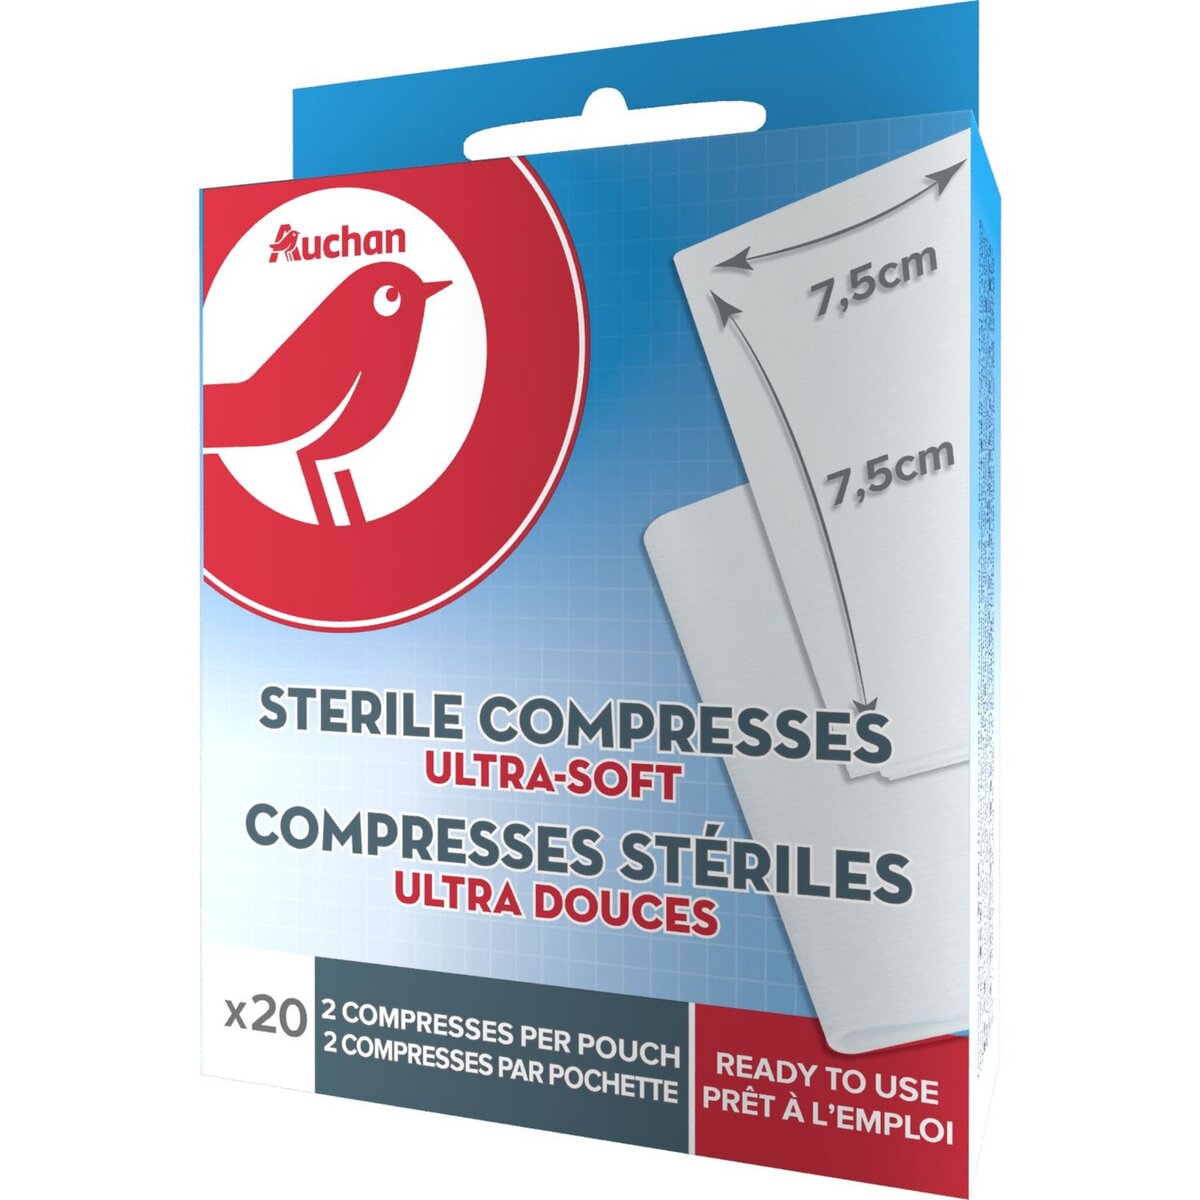 AUCHAN Compresses stériles ultra-douces 7,5cmx7,5xm 7,5cmx7,5cm 20 compresses